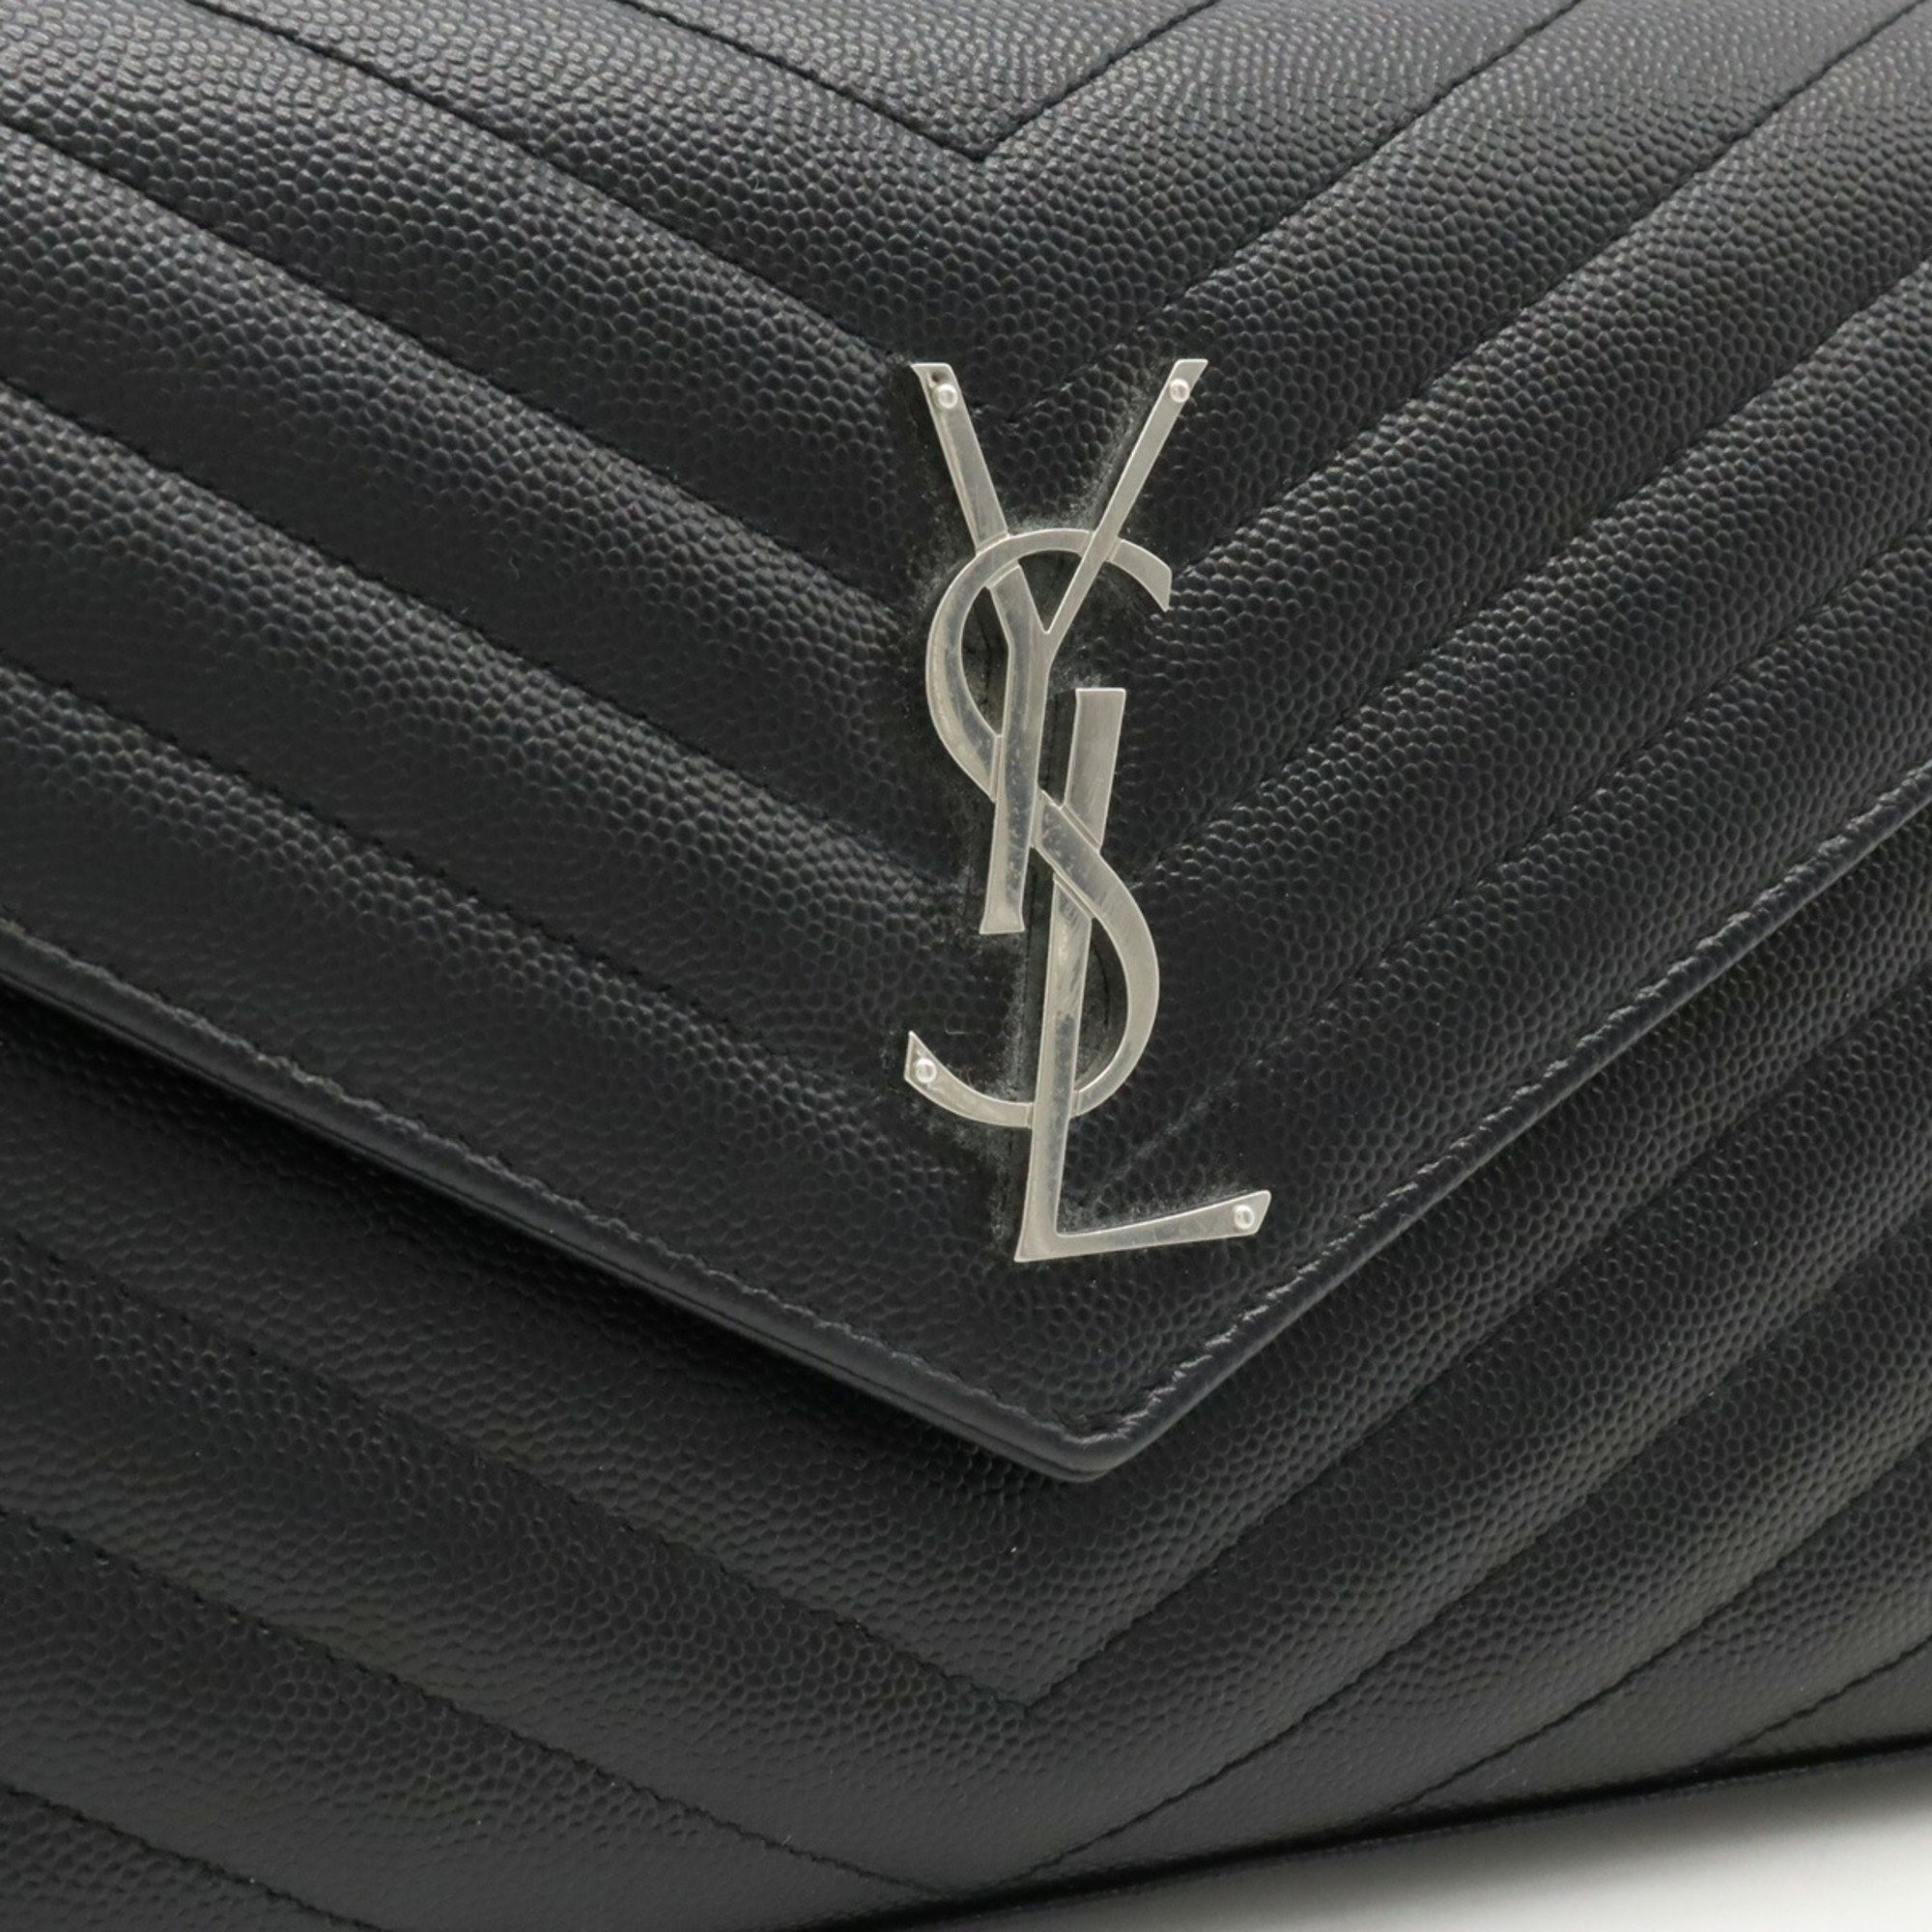 Yves Saint Laurent SAINT LAURENT PARIS Saint Laurent Paris Yves Monogram Chain Wallet Clutch Bag Leather Black 377828